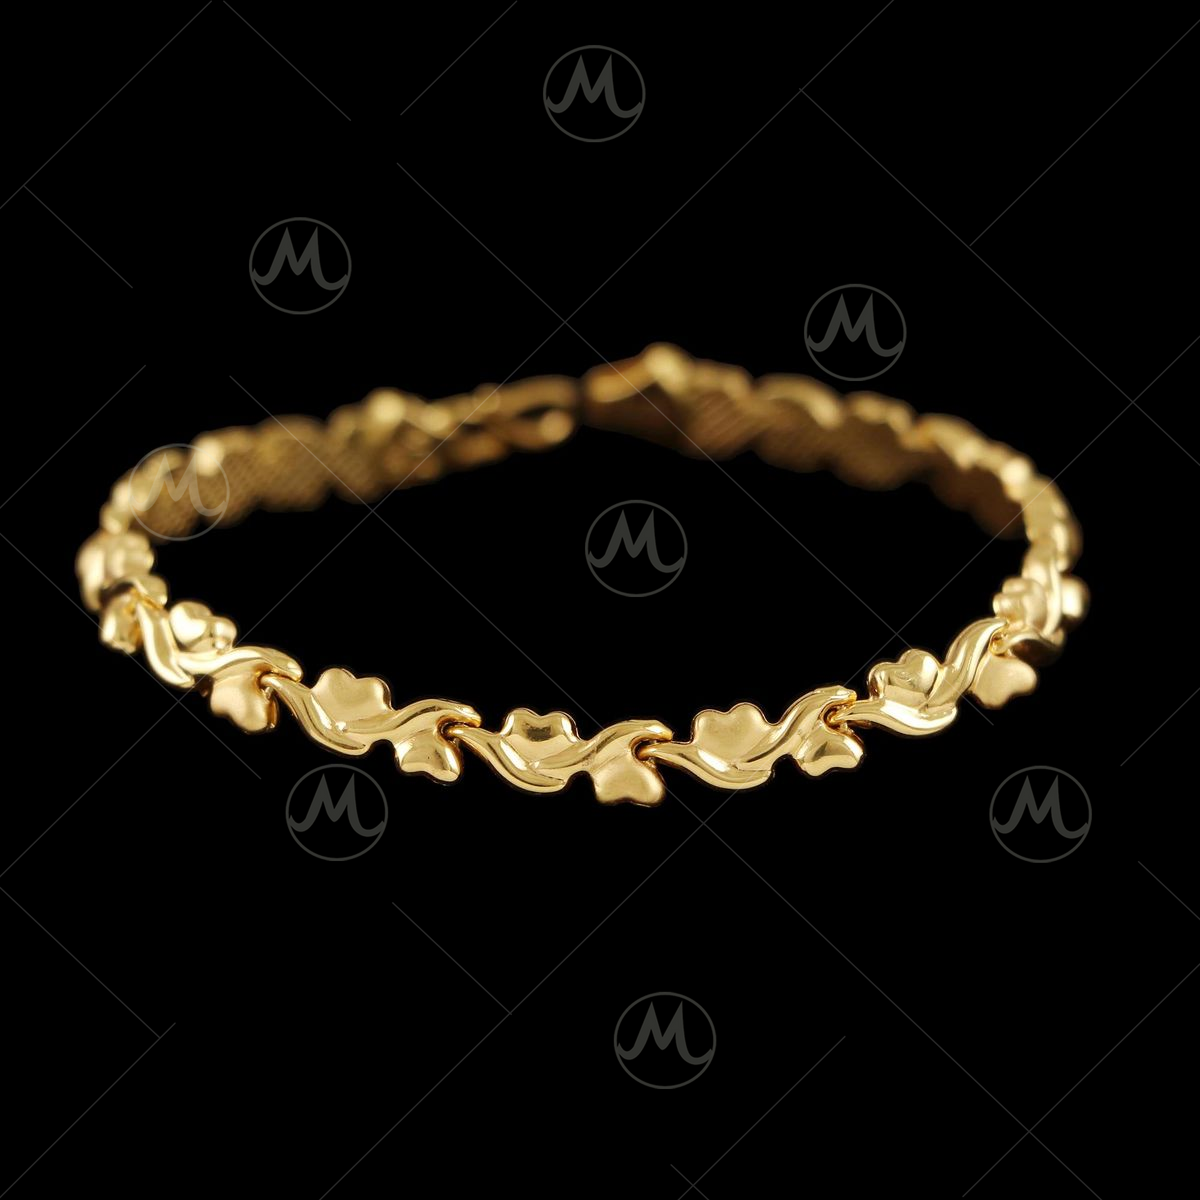 Buy SSL Rose Gold watch Style Bracelet at...